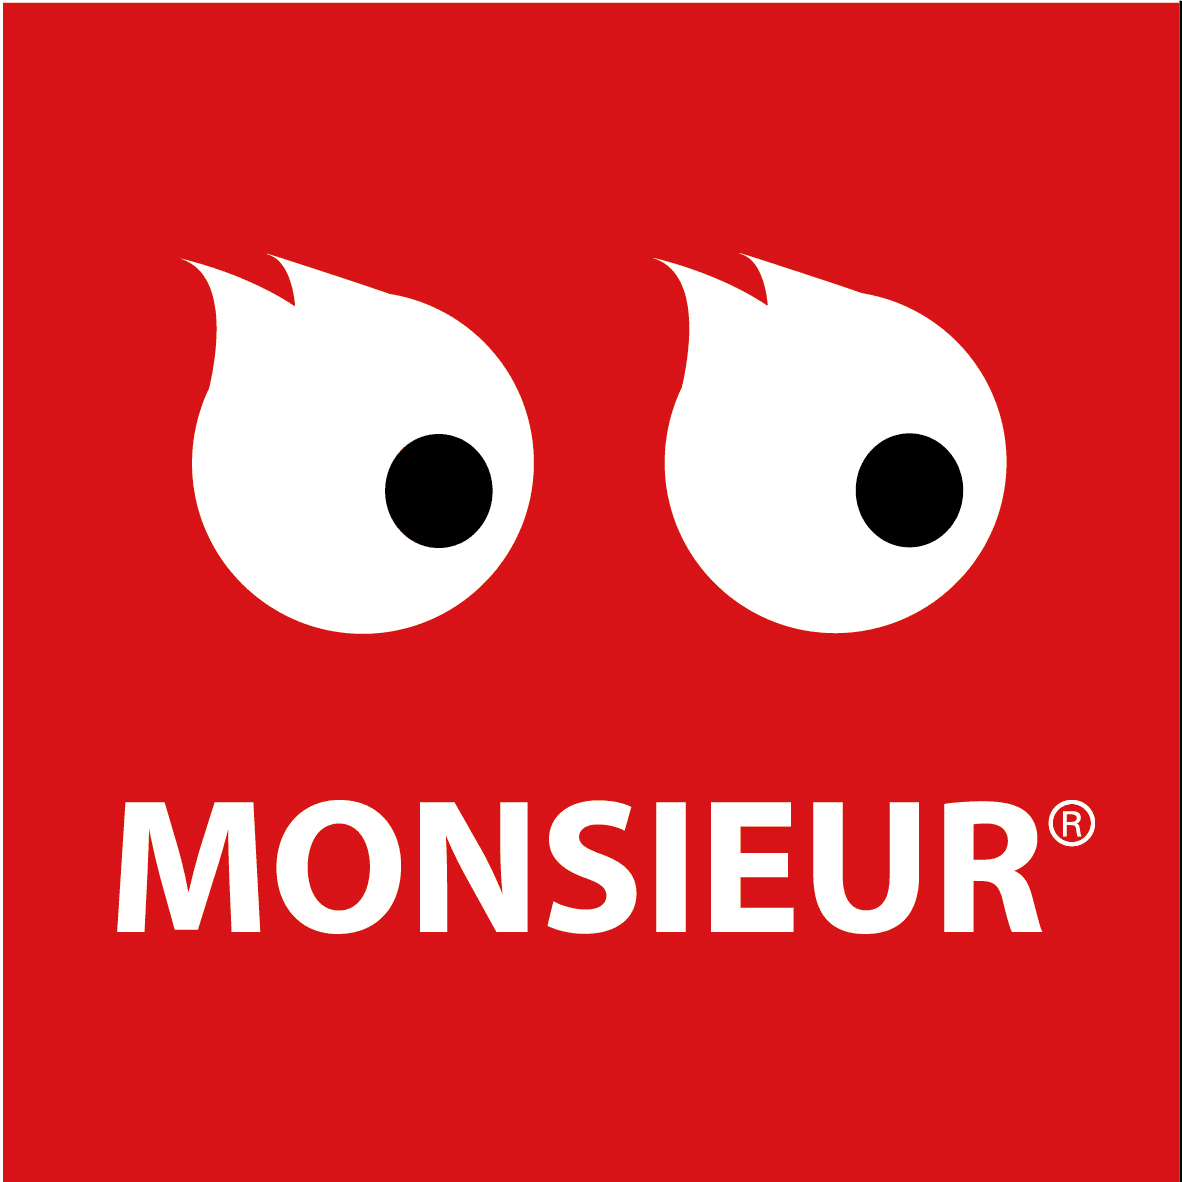 MONSIEUR_ART バナー